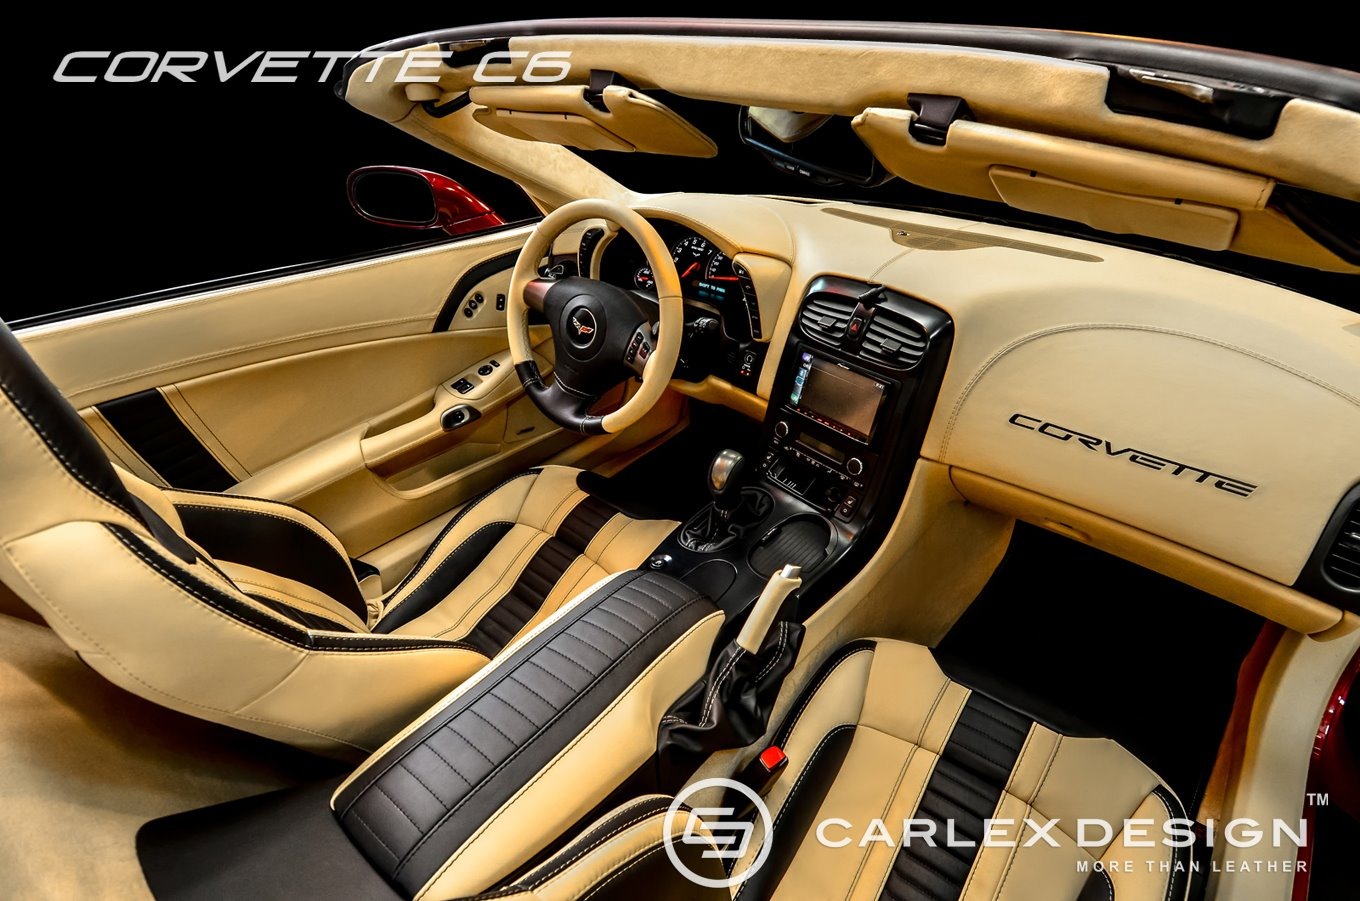 carlex-design-corvette-c6-1